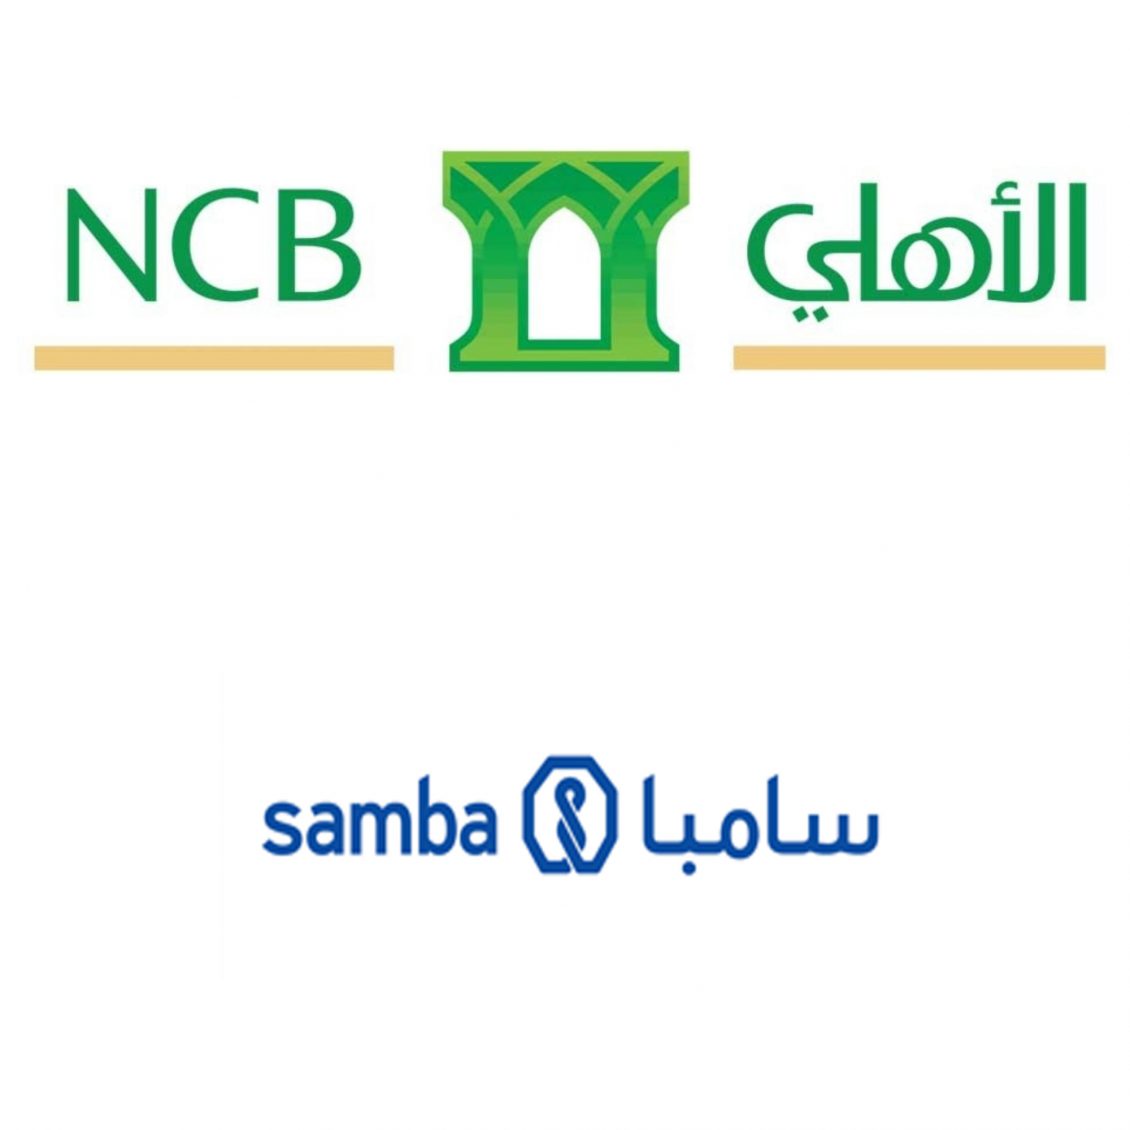 National Commercial Bank - Samba